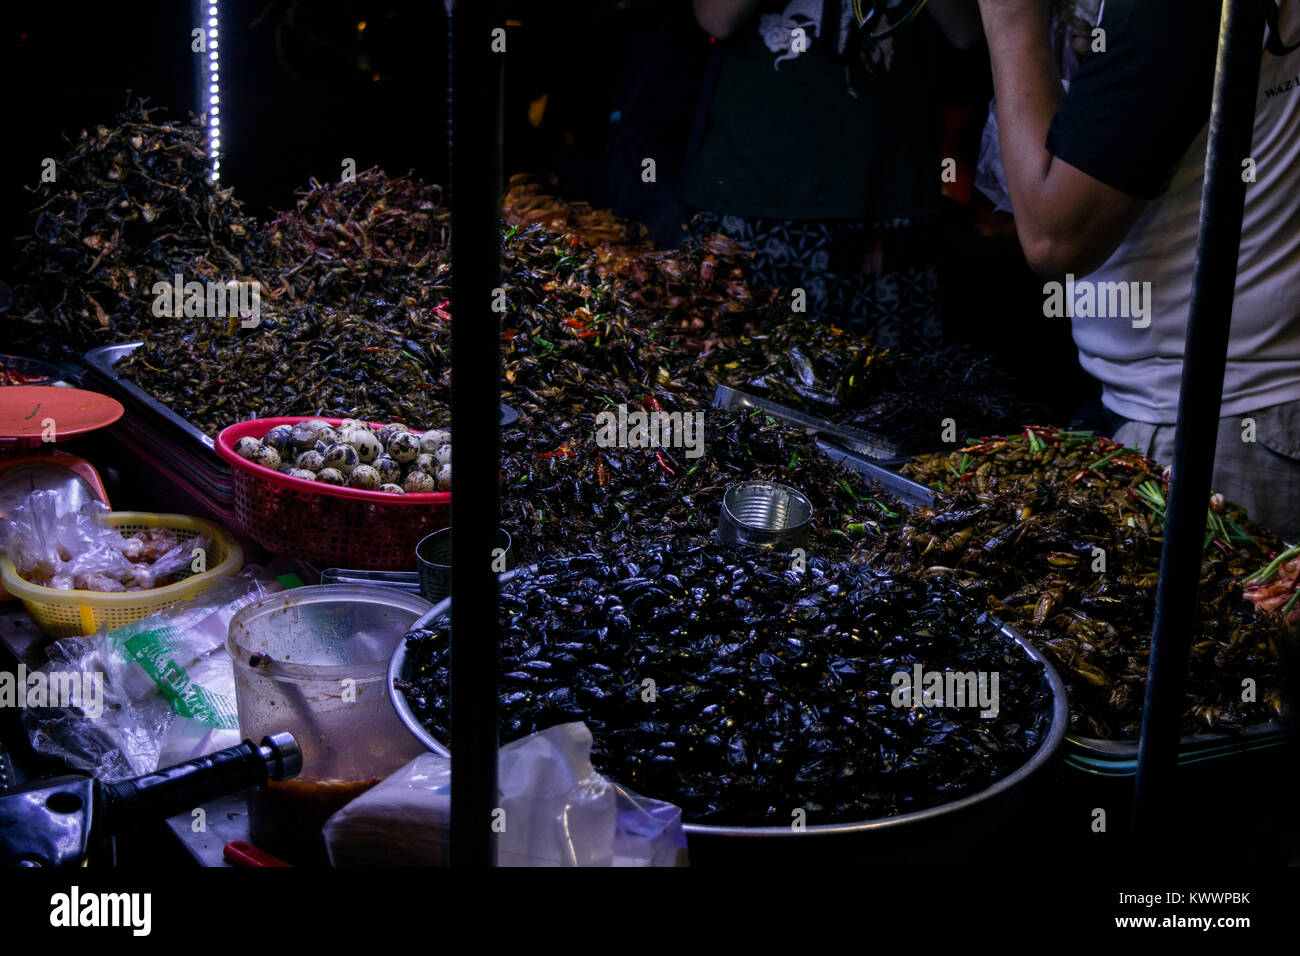 Un étal vendant de l'alimentation de rue cuisine asiatique, y compris les insectes frits crevettes blattes grillons des oeufs de cailles à Phnom Penh, Cambodge, Asie du Sud Est Banque D'Images